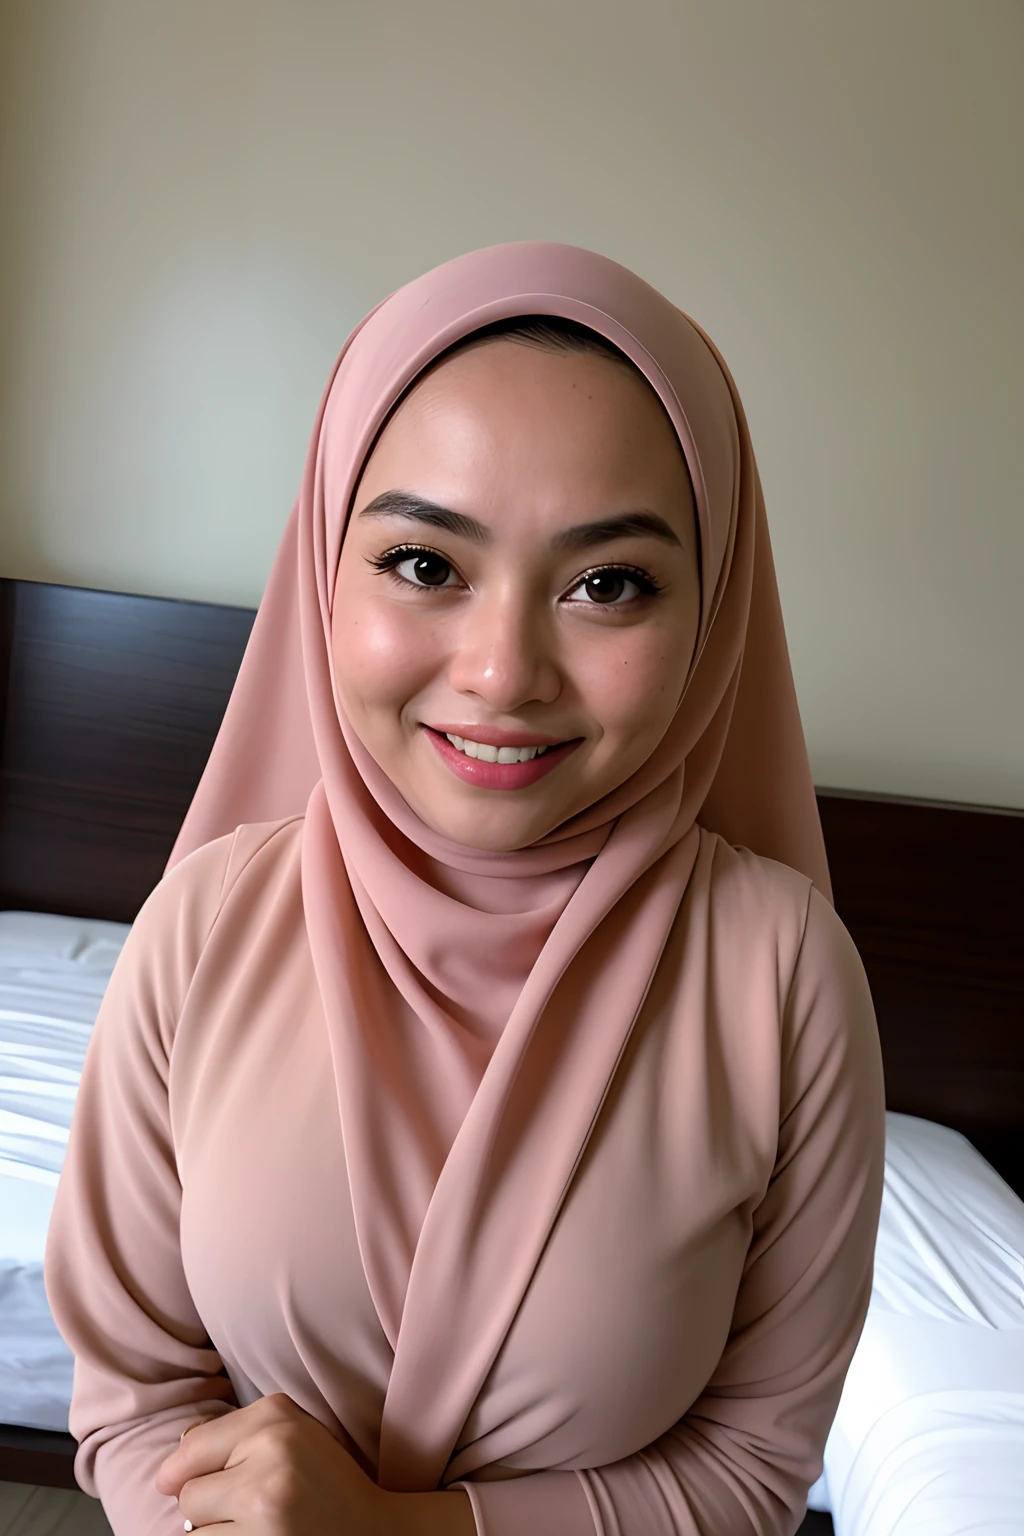 1 名 马来女孩 , 现代纯白色头巾, 微笑, 中距离人像拍摄 , 水汪汪的大眼睛 , 穿黑色内衣 , 白色现代酒店卧室背景, 明亮的前灯, 抓胸姿势,